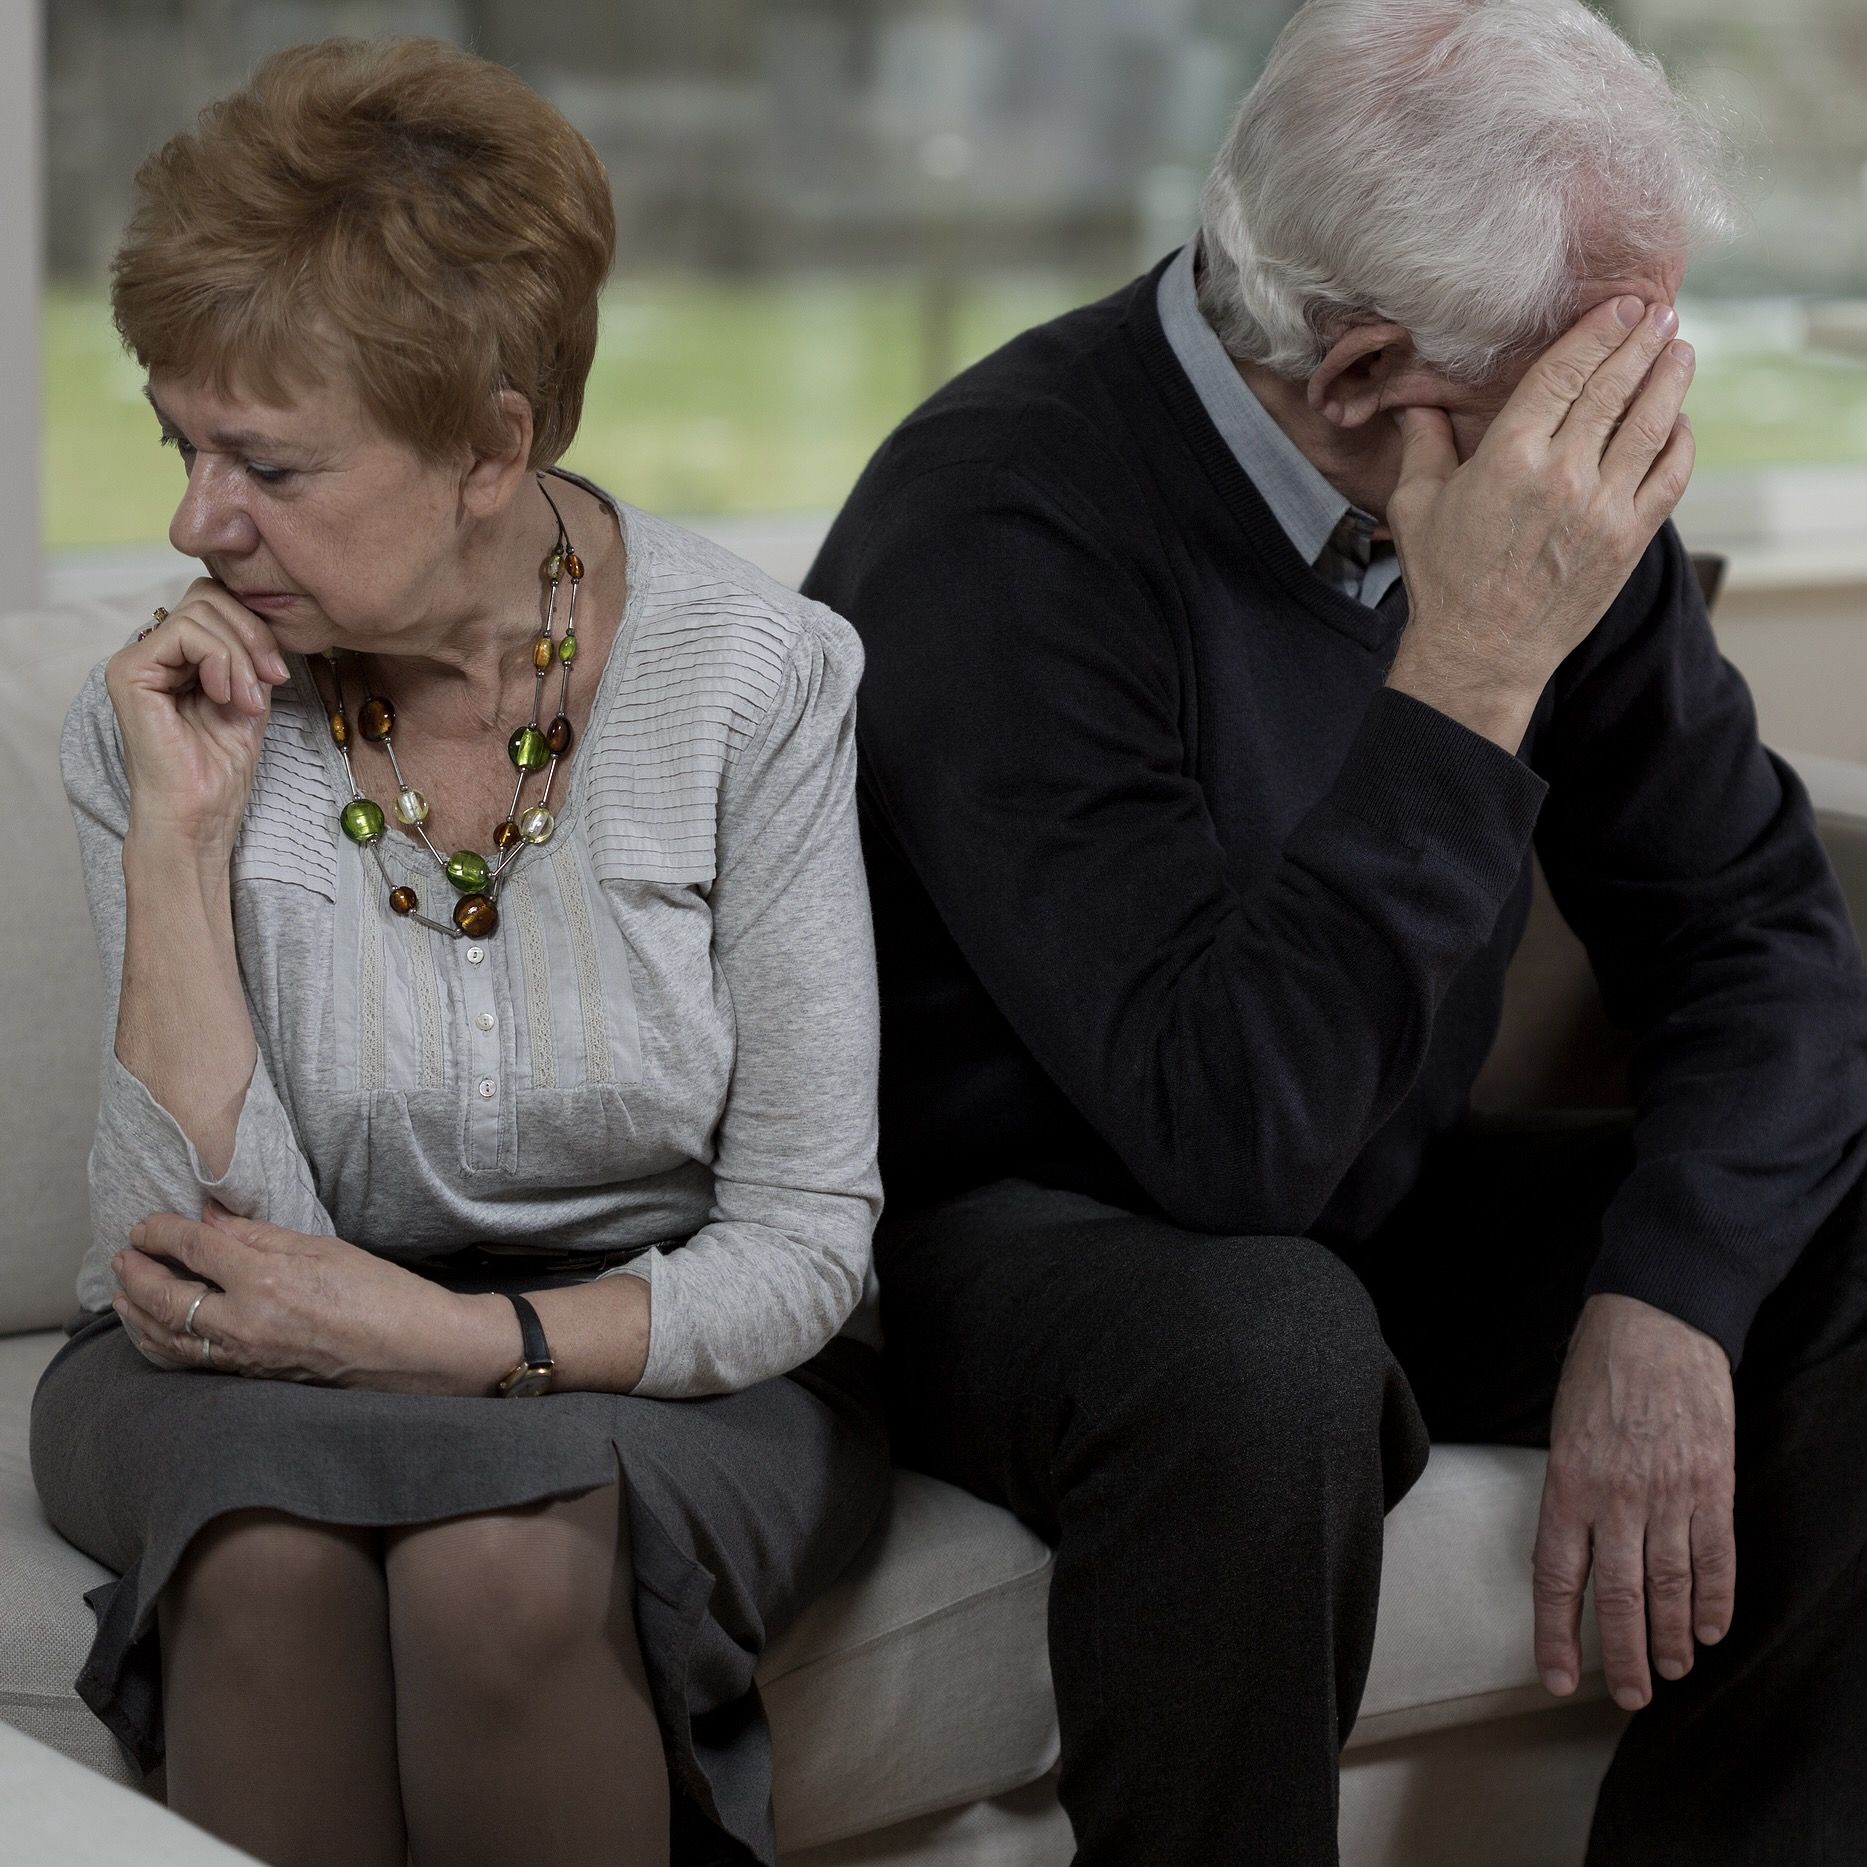 Se acabó el tener que aguantar: crecen los divorcios en personas mayores (Foto: Bigstock)